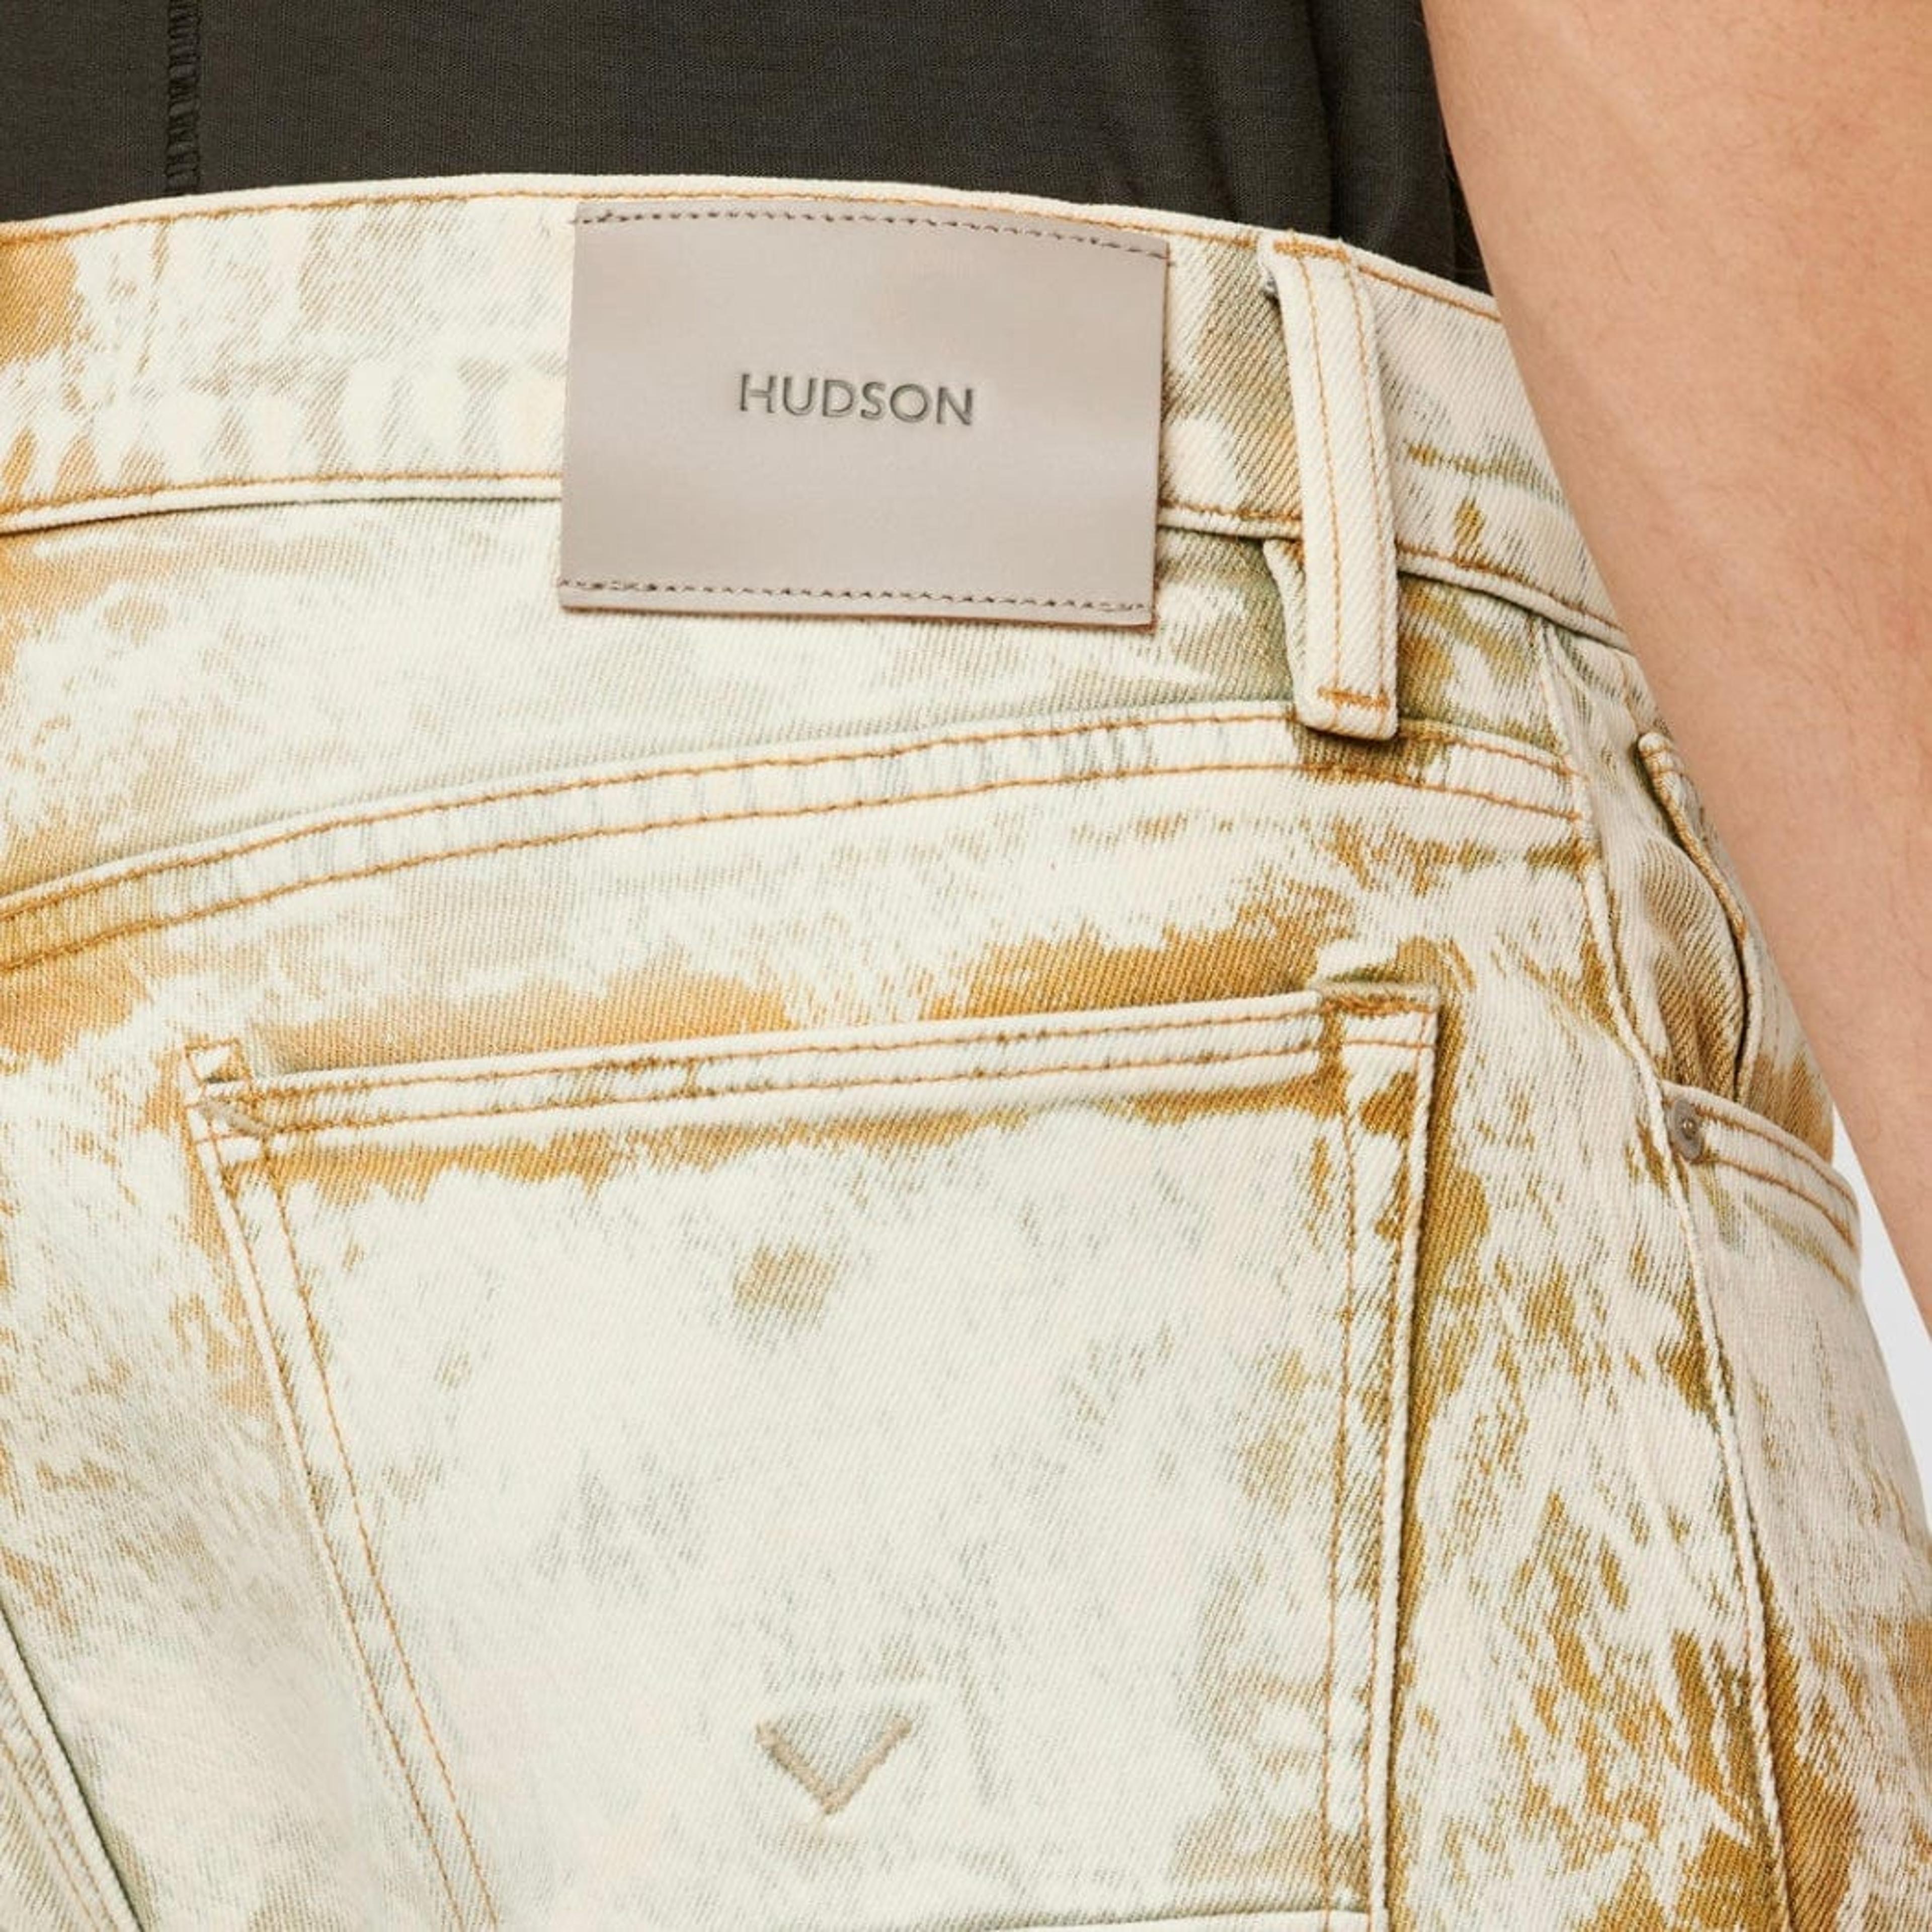 Hudson Men's Zack Coated Skinny Jeans